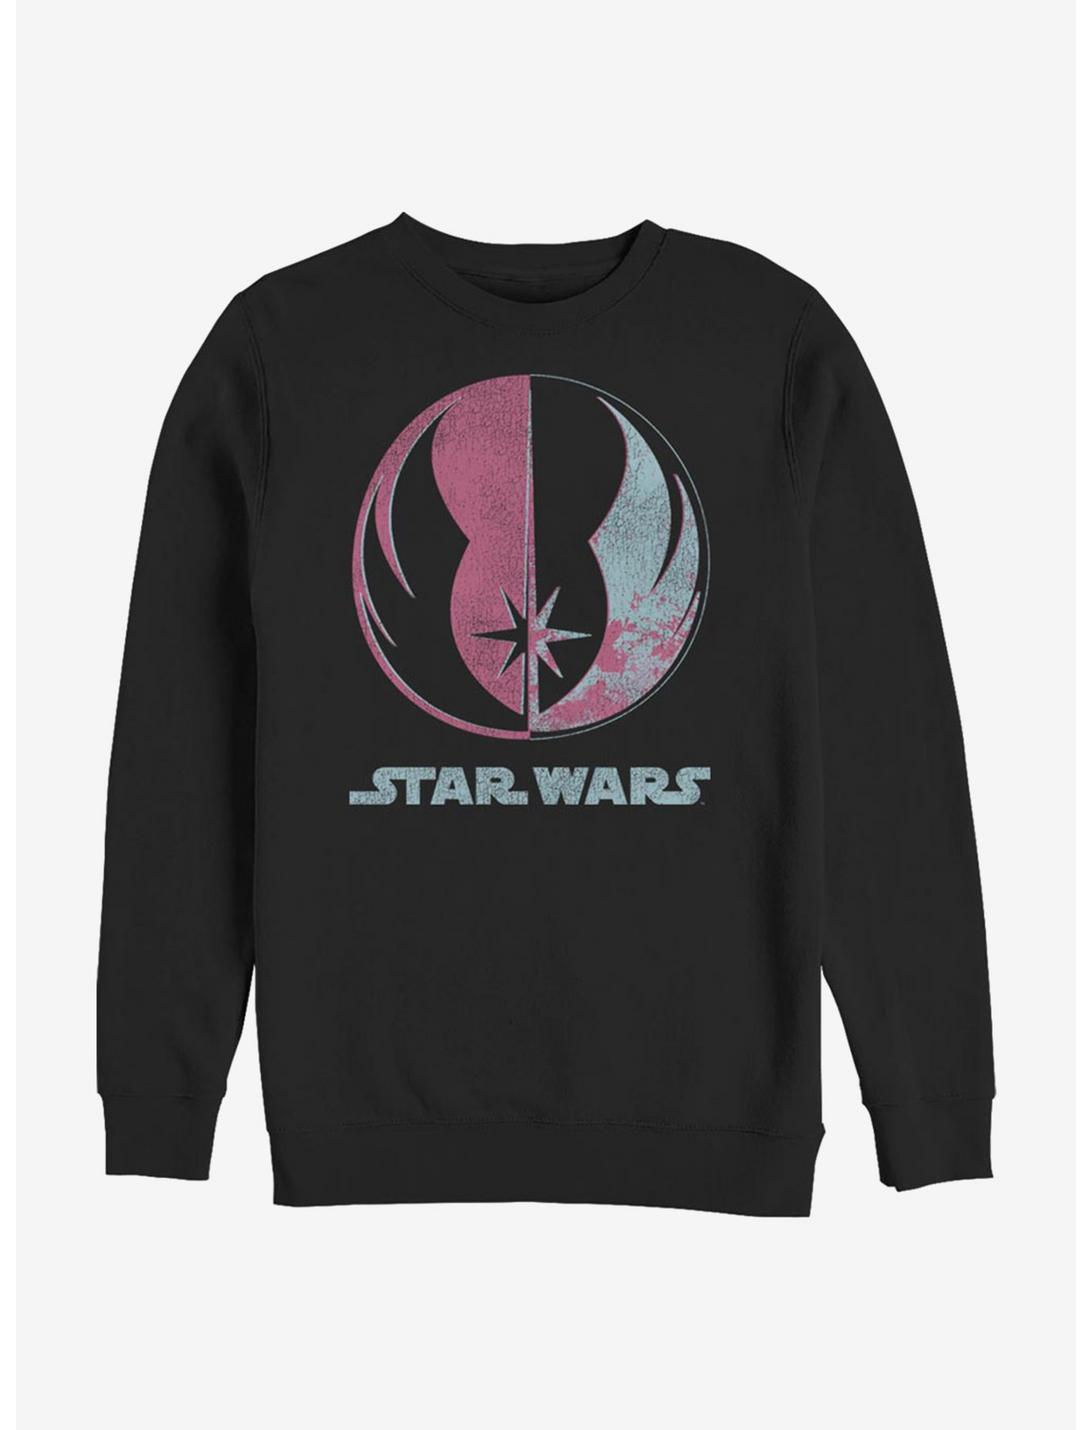 Star Wars Bright Jedi Symbol Sweatshirt, BLACK, hi-res